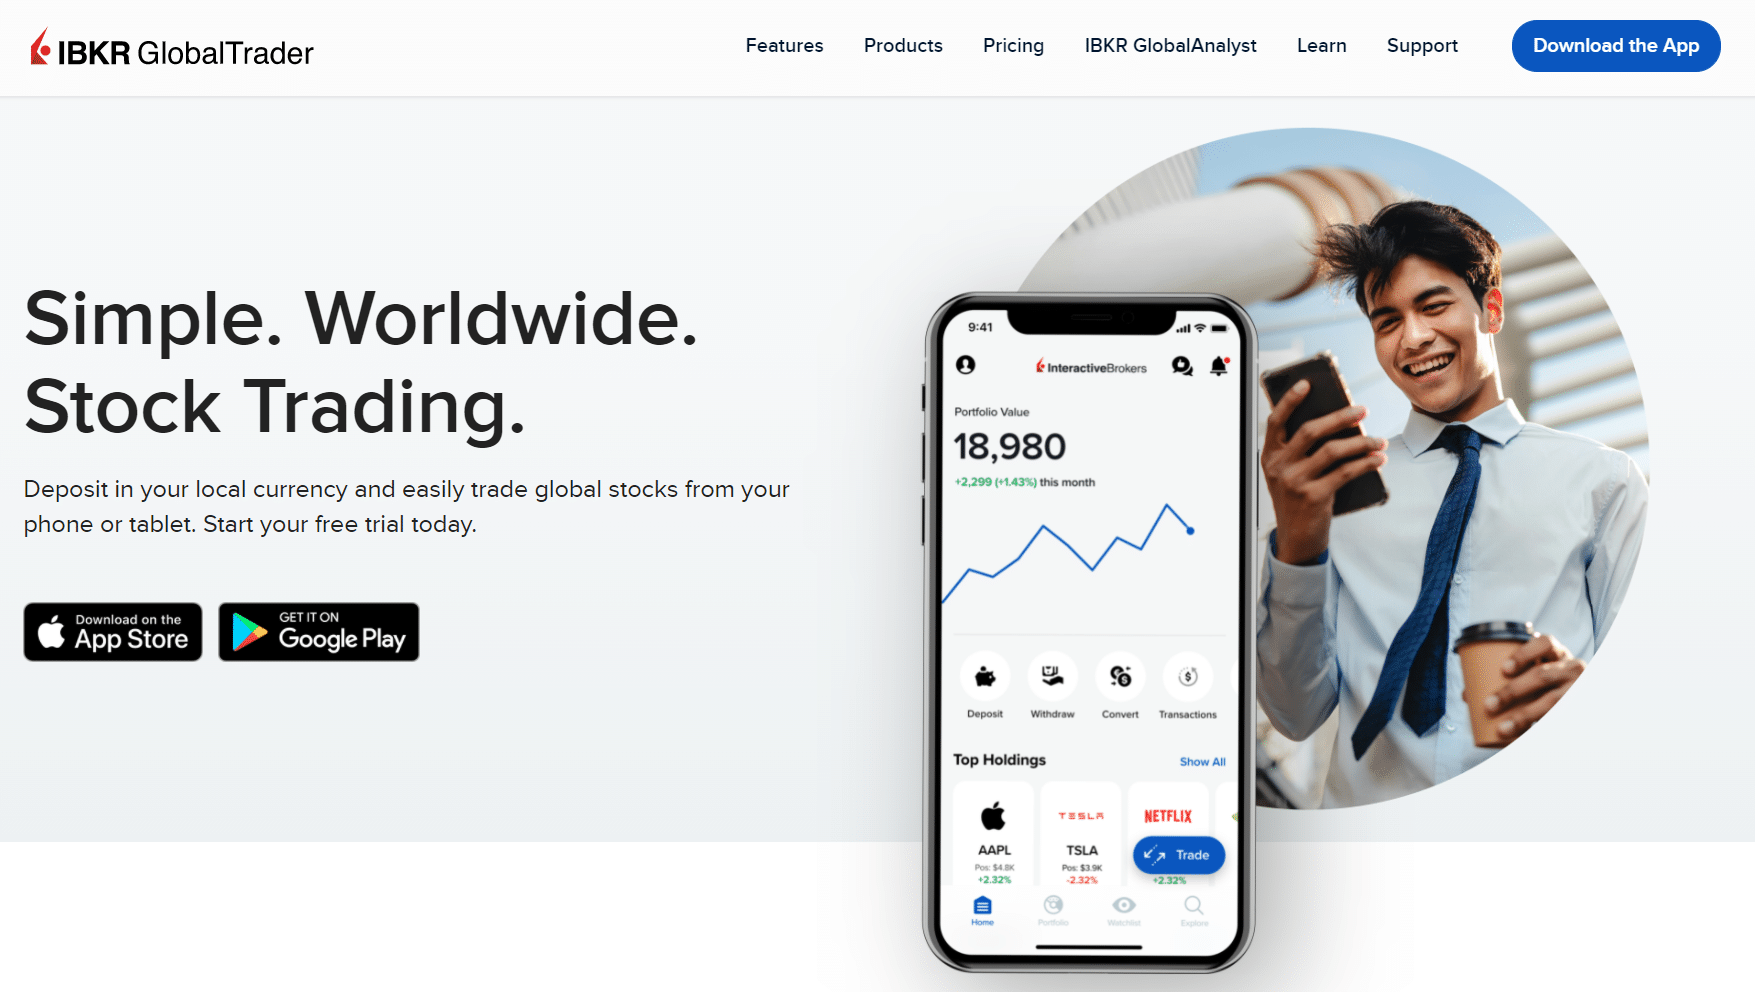 IBKR Global Trader homepage